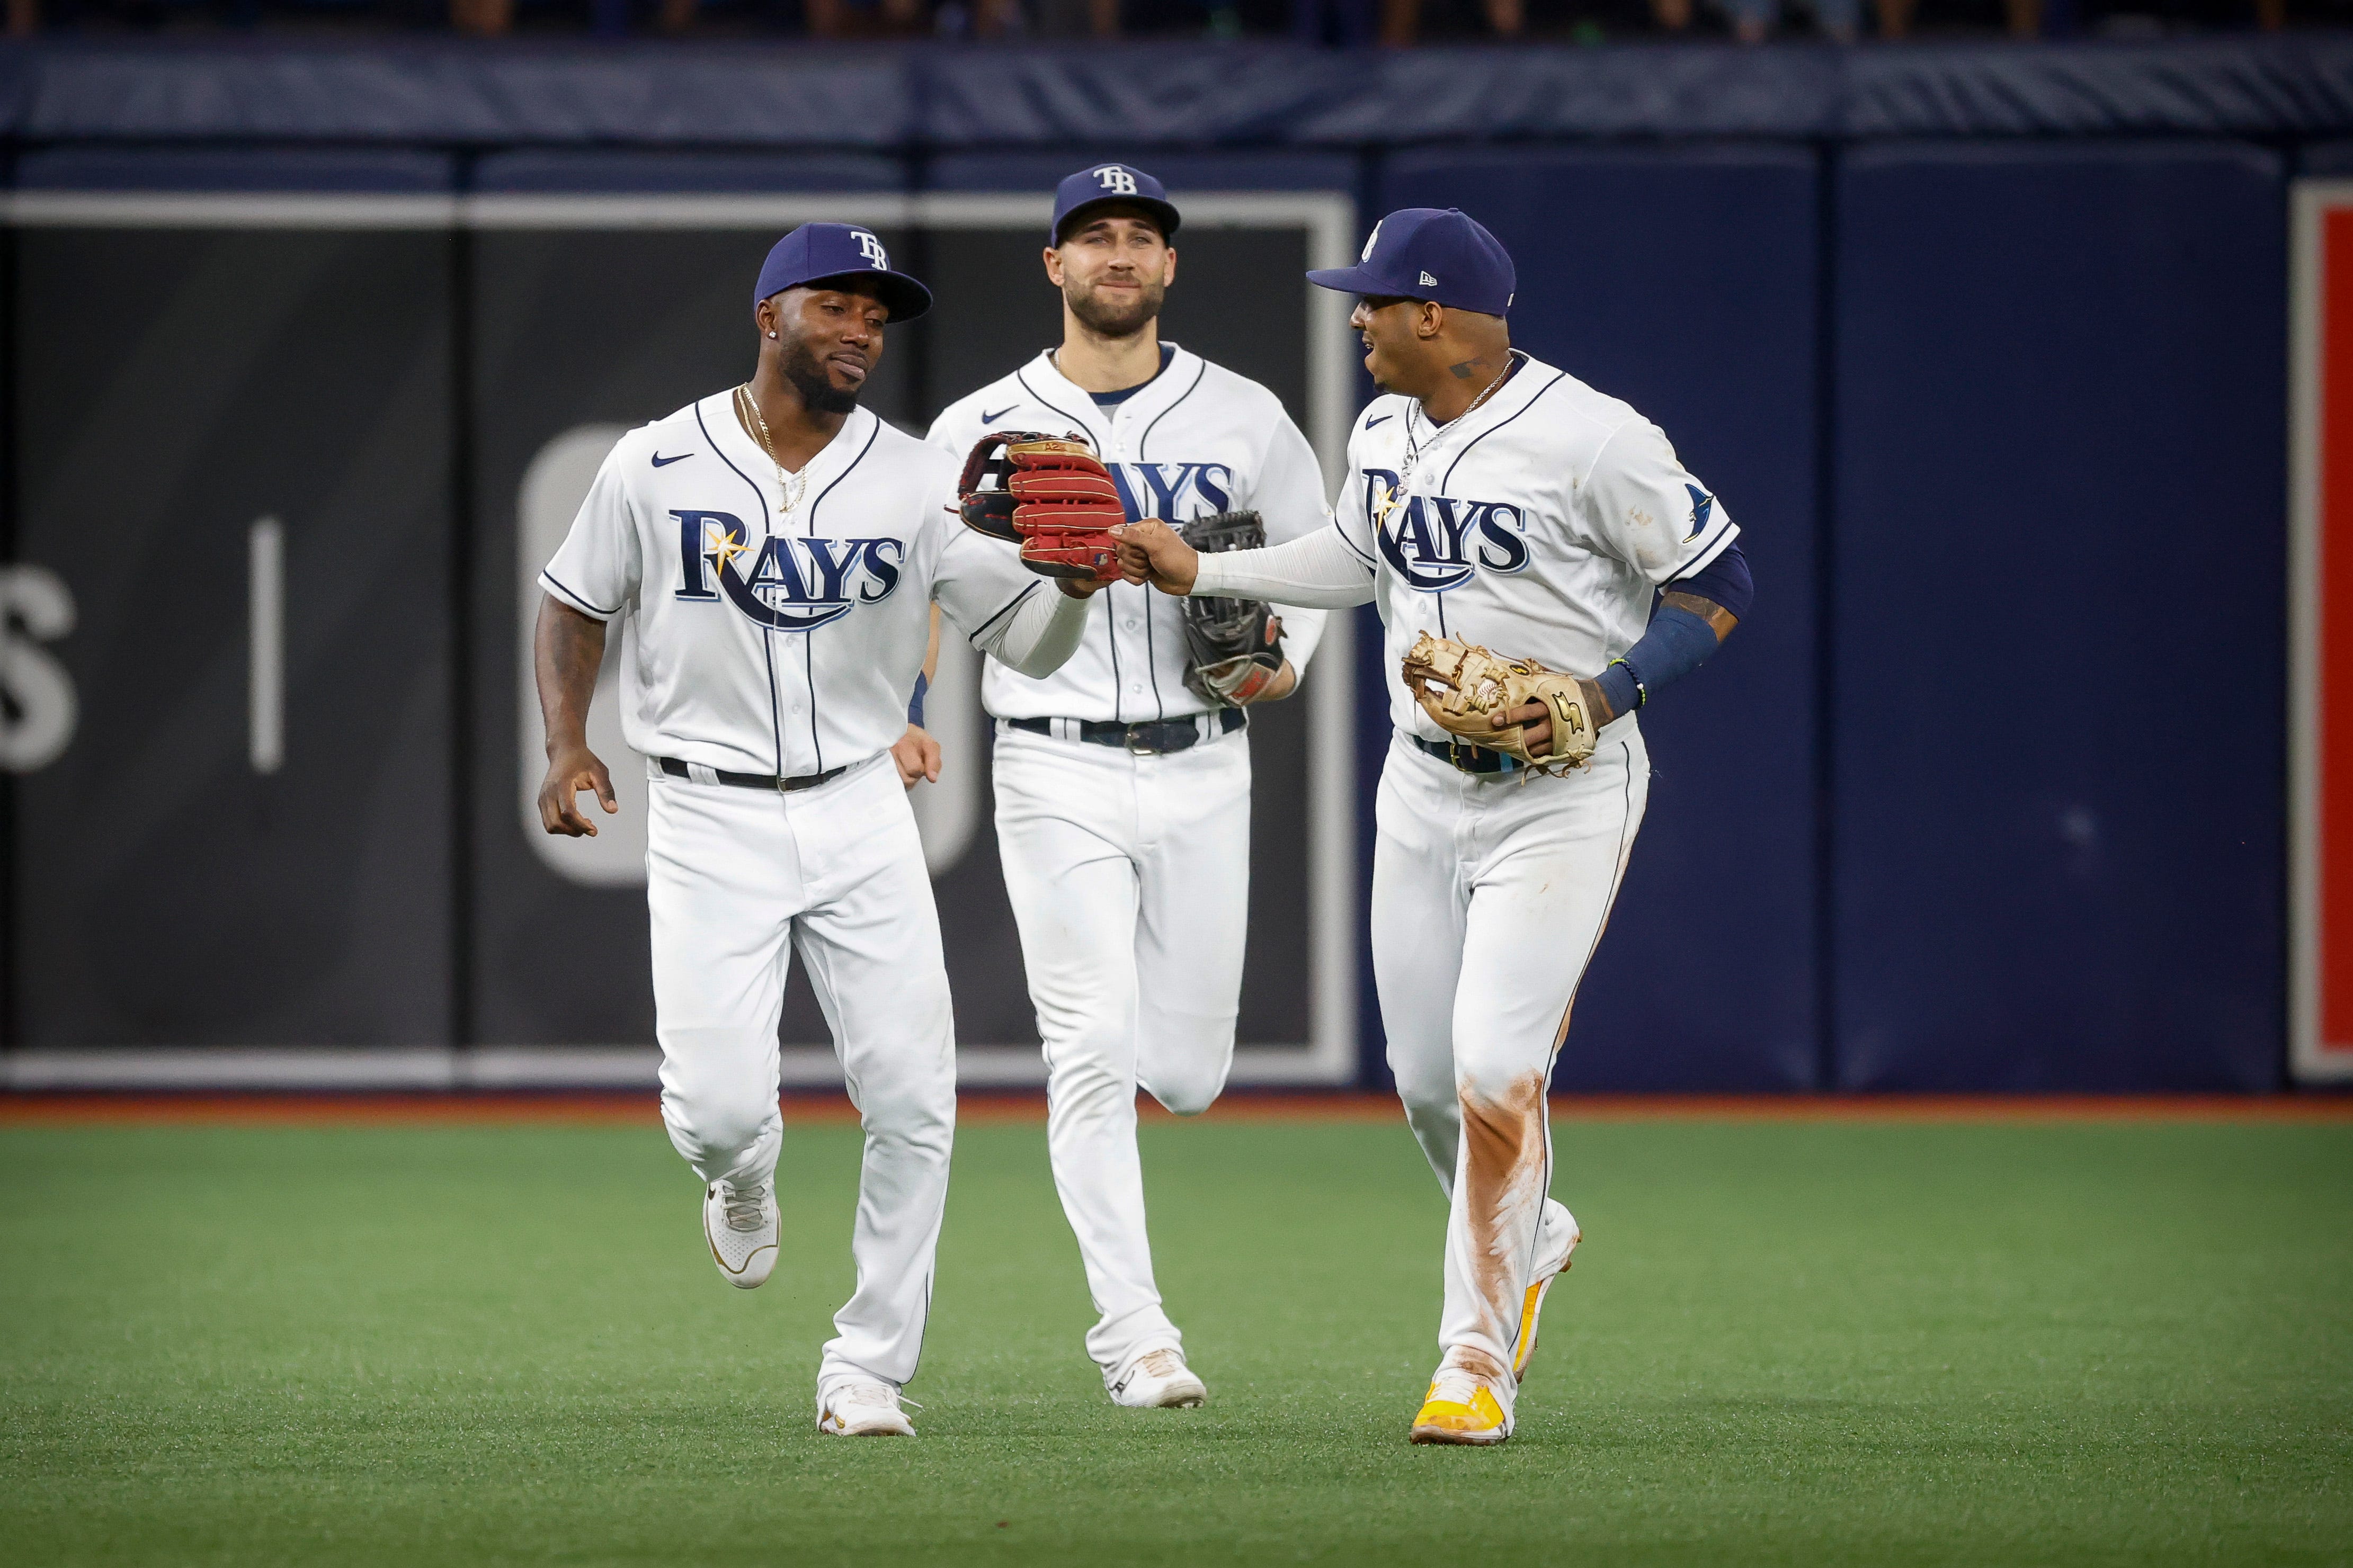 Devil Rays Uniforms Return for four in 2019 – SportsLogos.Net News